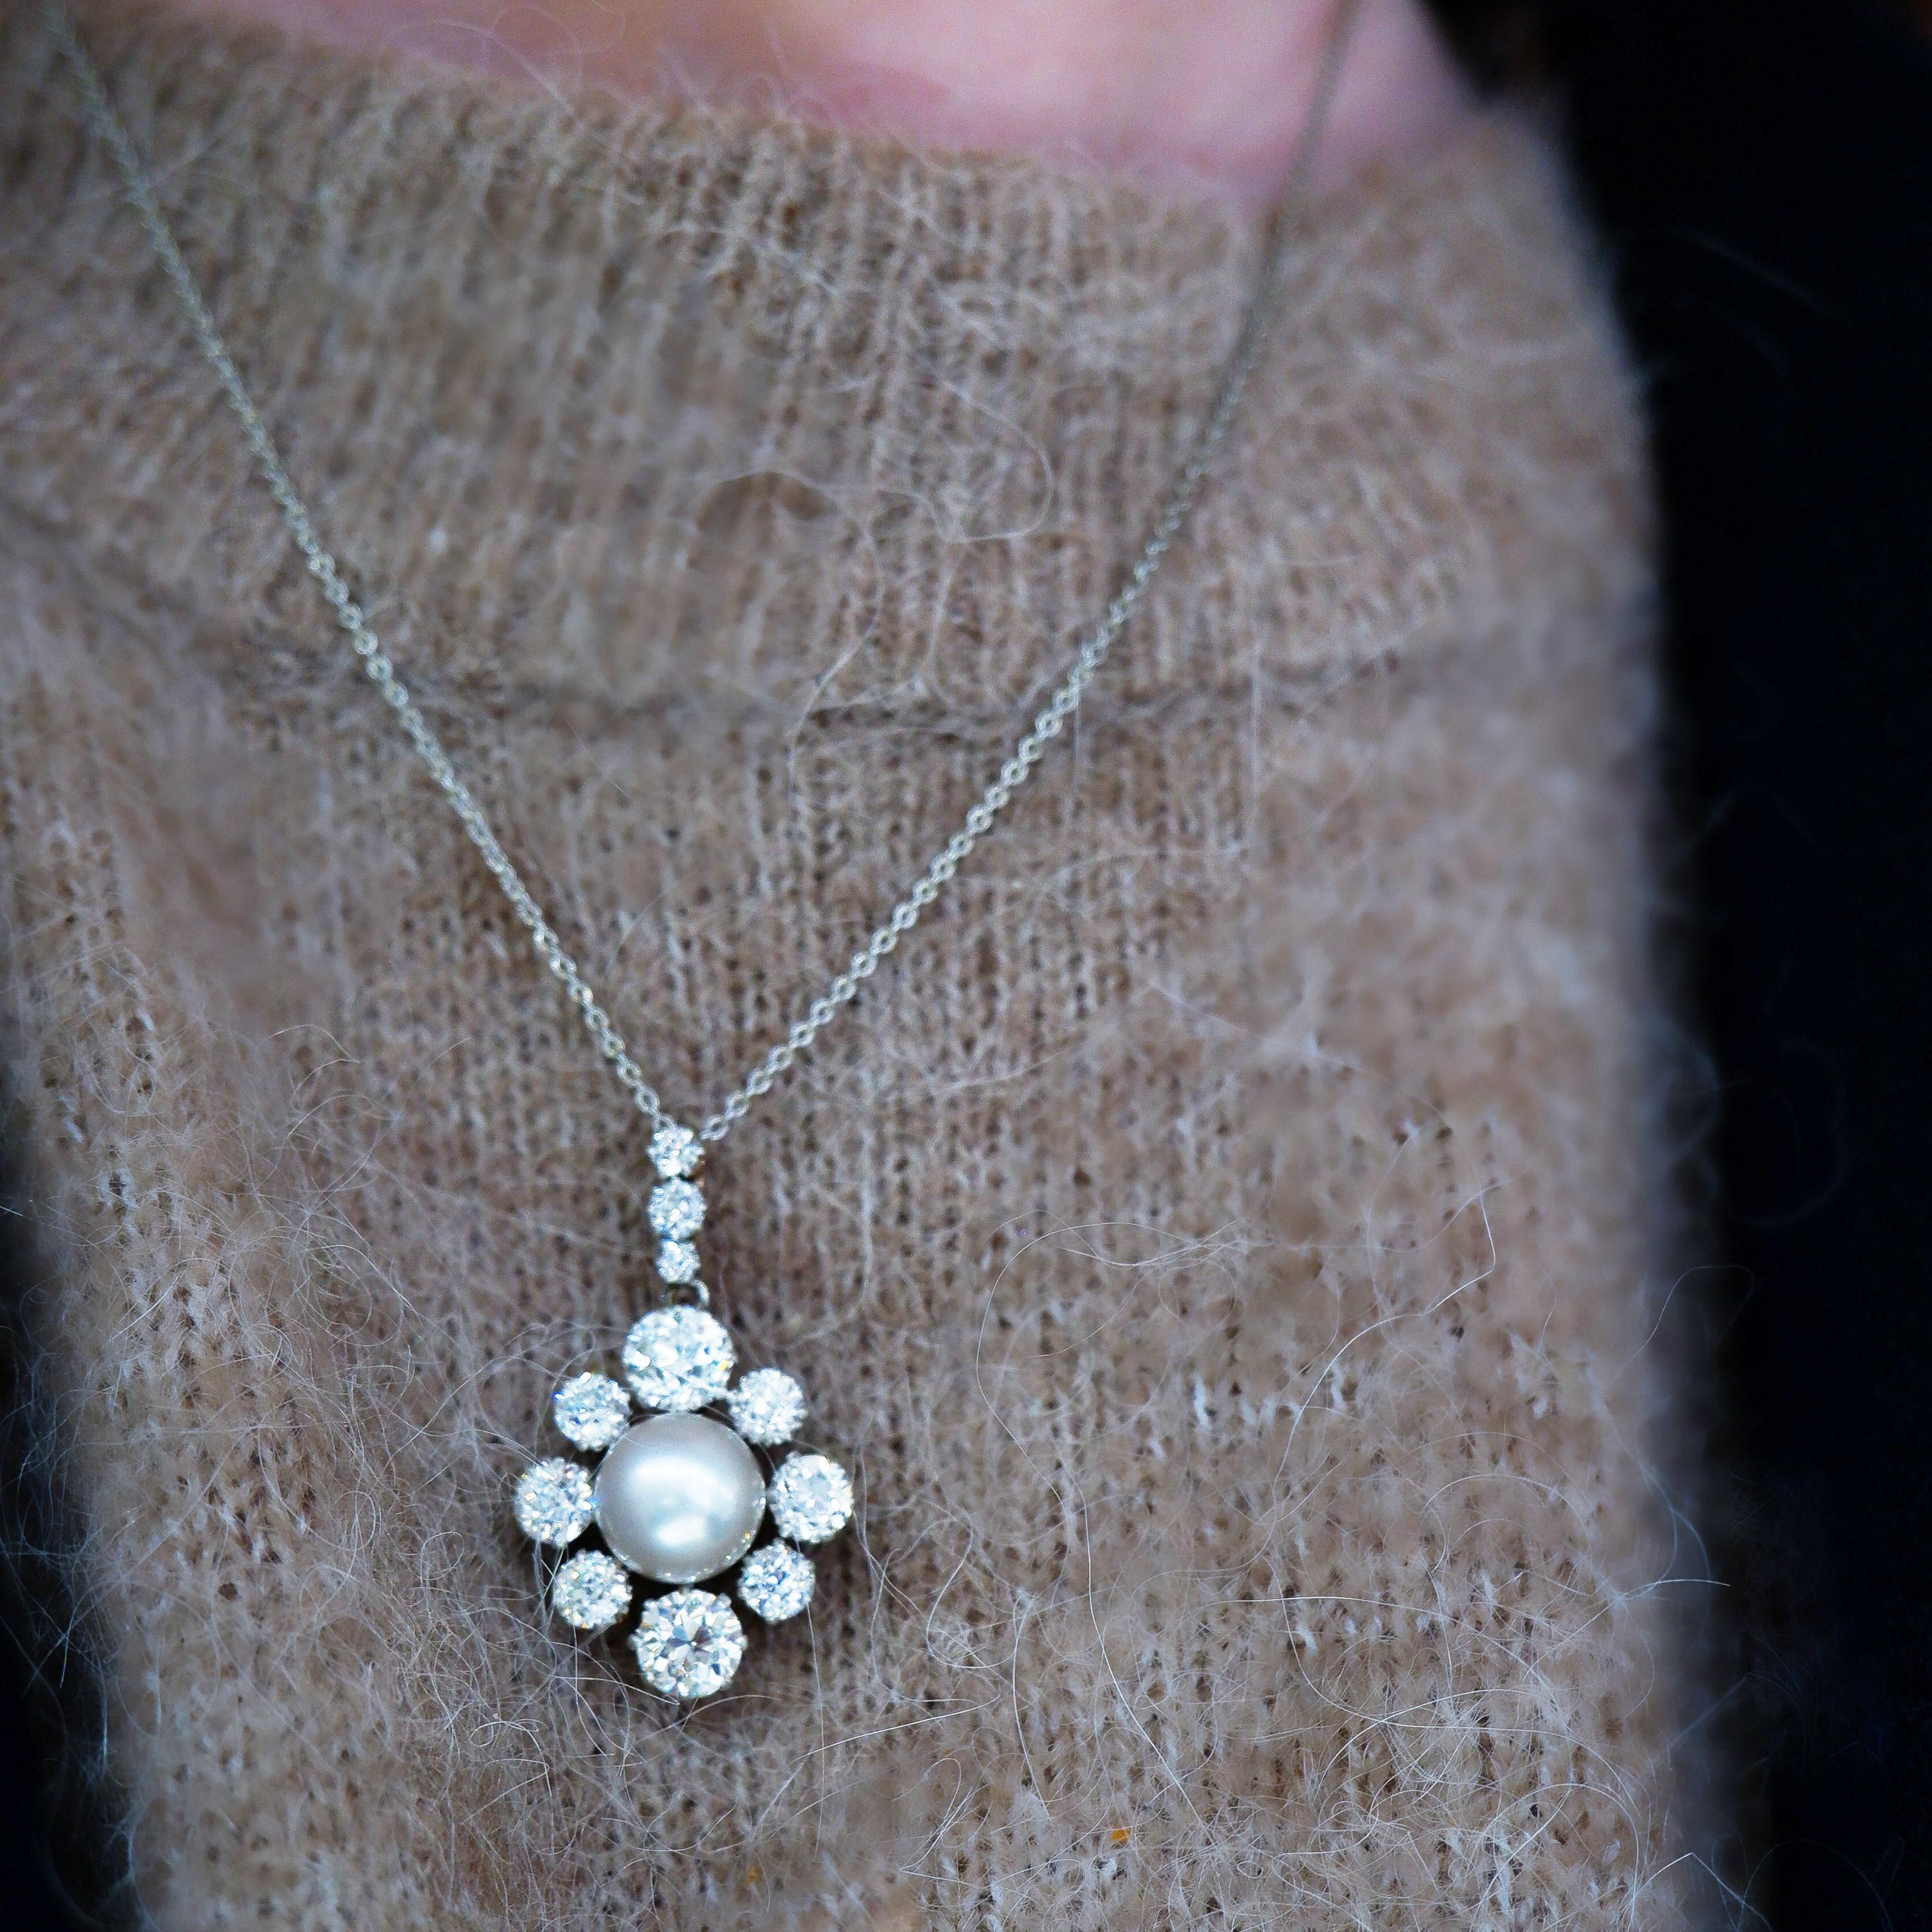 Pendentif ancien en perles et diamants, avec une perle bouton naturelle en argent blanc, au centre d'une grappe de diamants, composée de huit diamants de taille ancienne alternés, plus grands et plus petits, en serti couronne et cœur, monté en